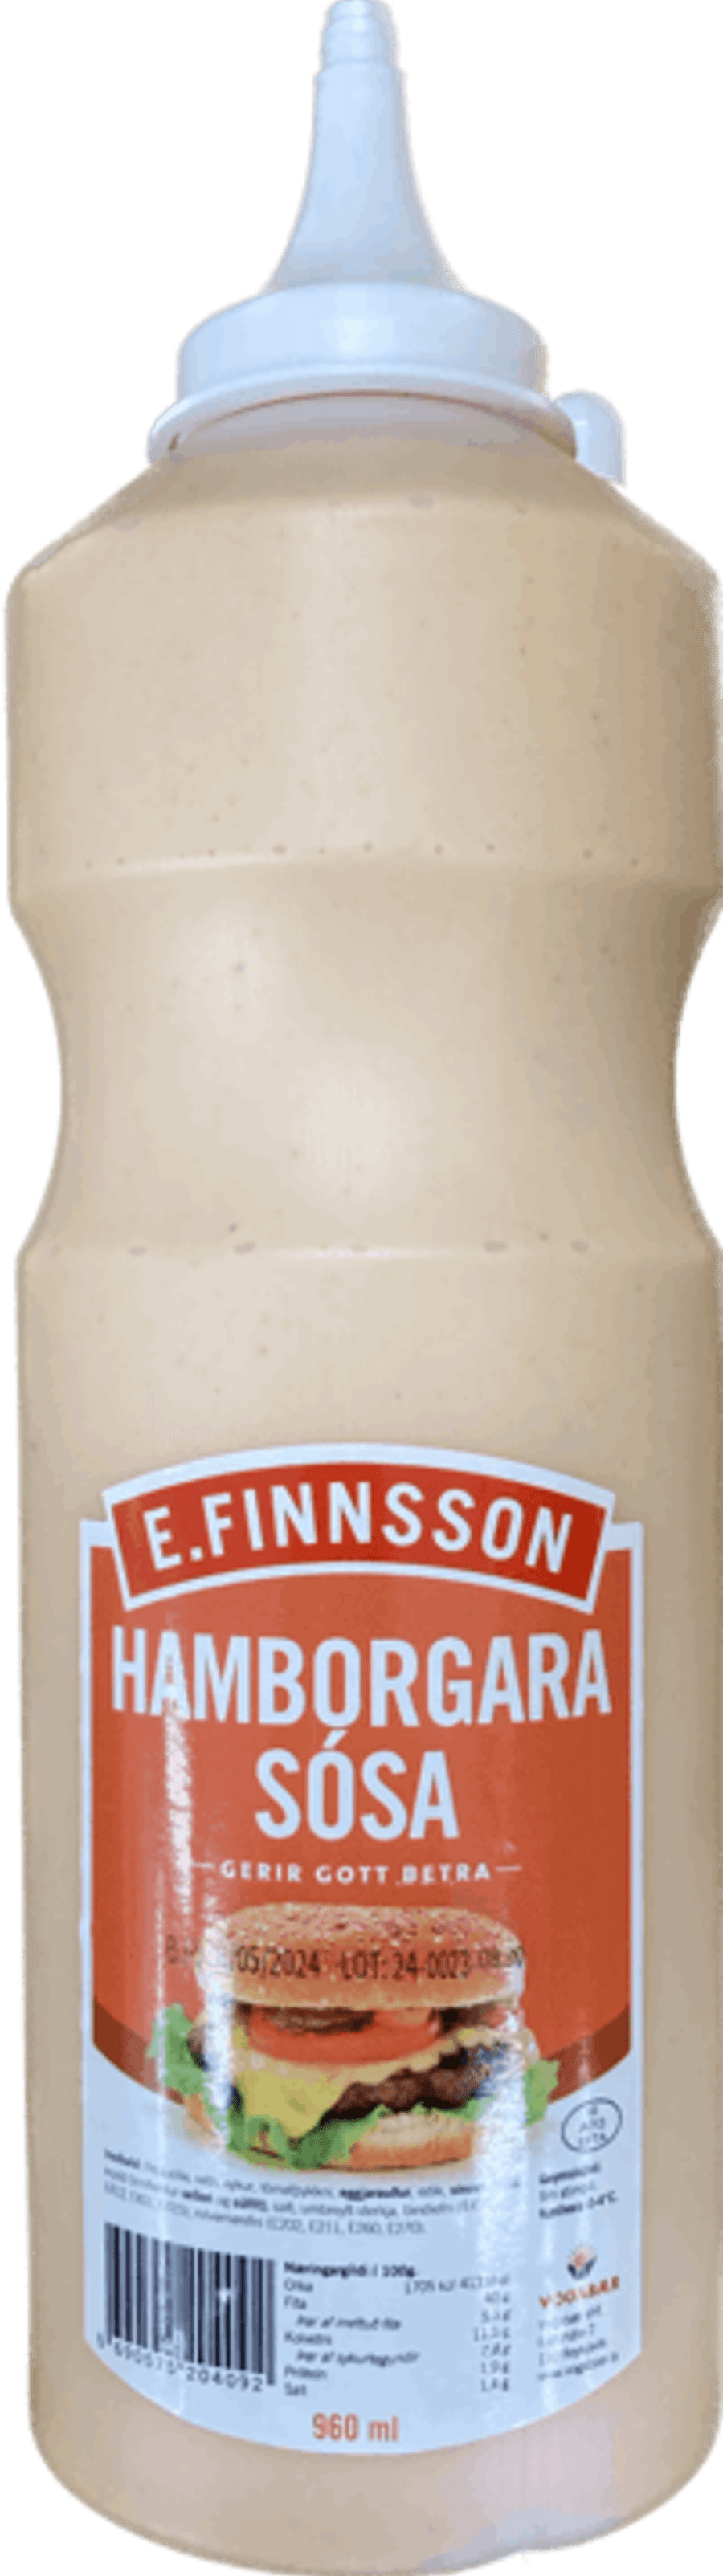 E.finnsson sósa hamborgara 960 ml